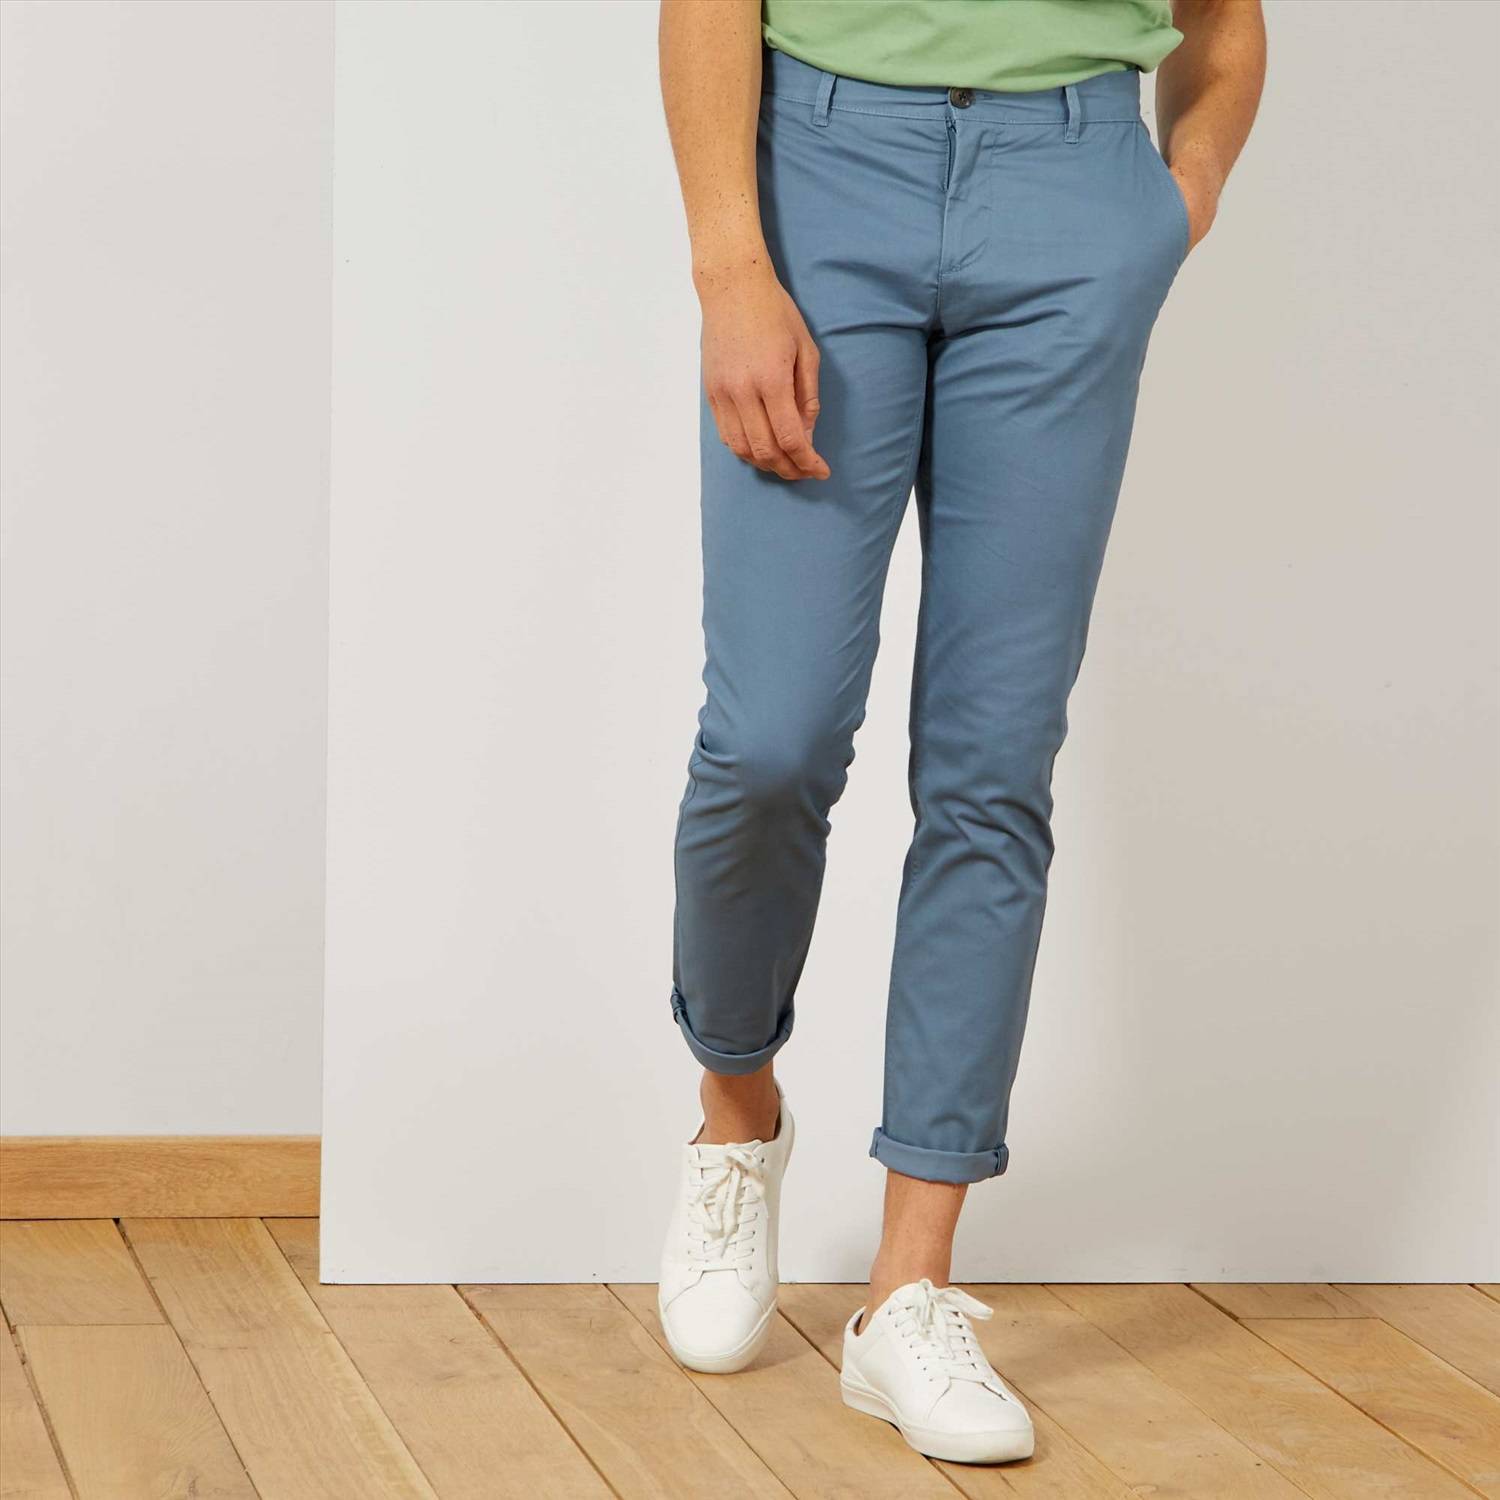 Подвороты на джинсах: осваиваем правильные подкаты